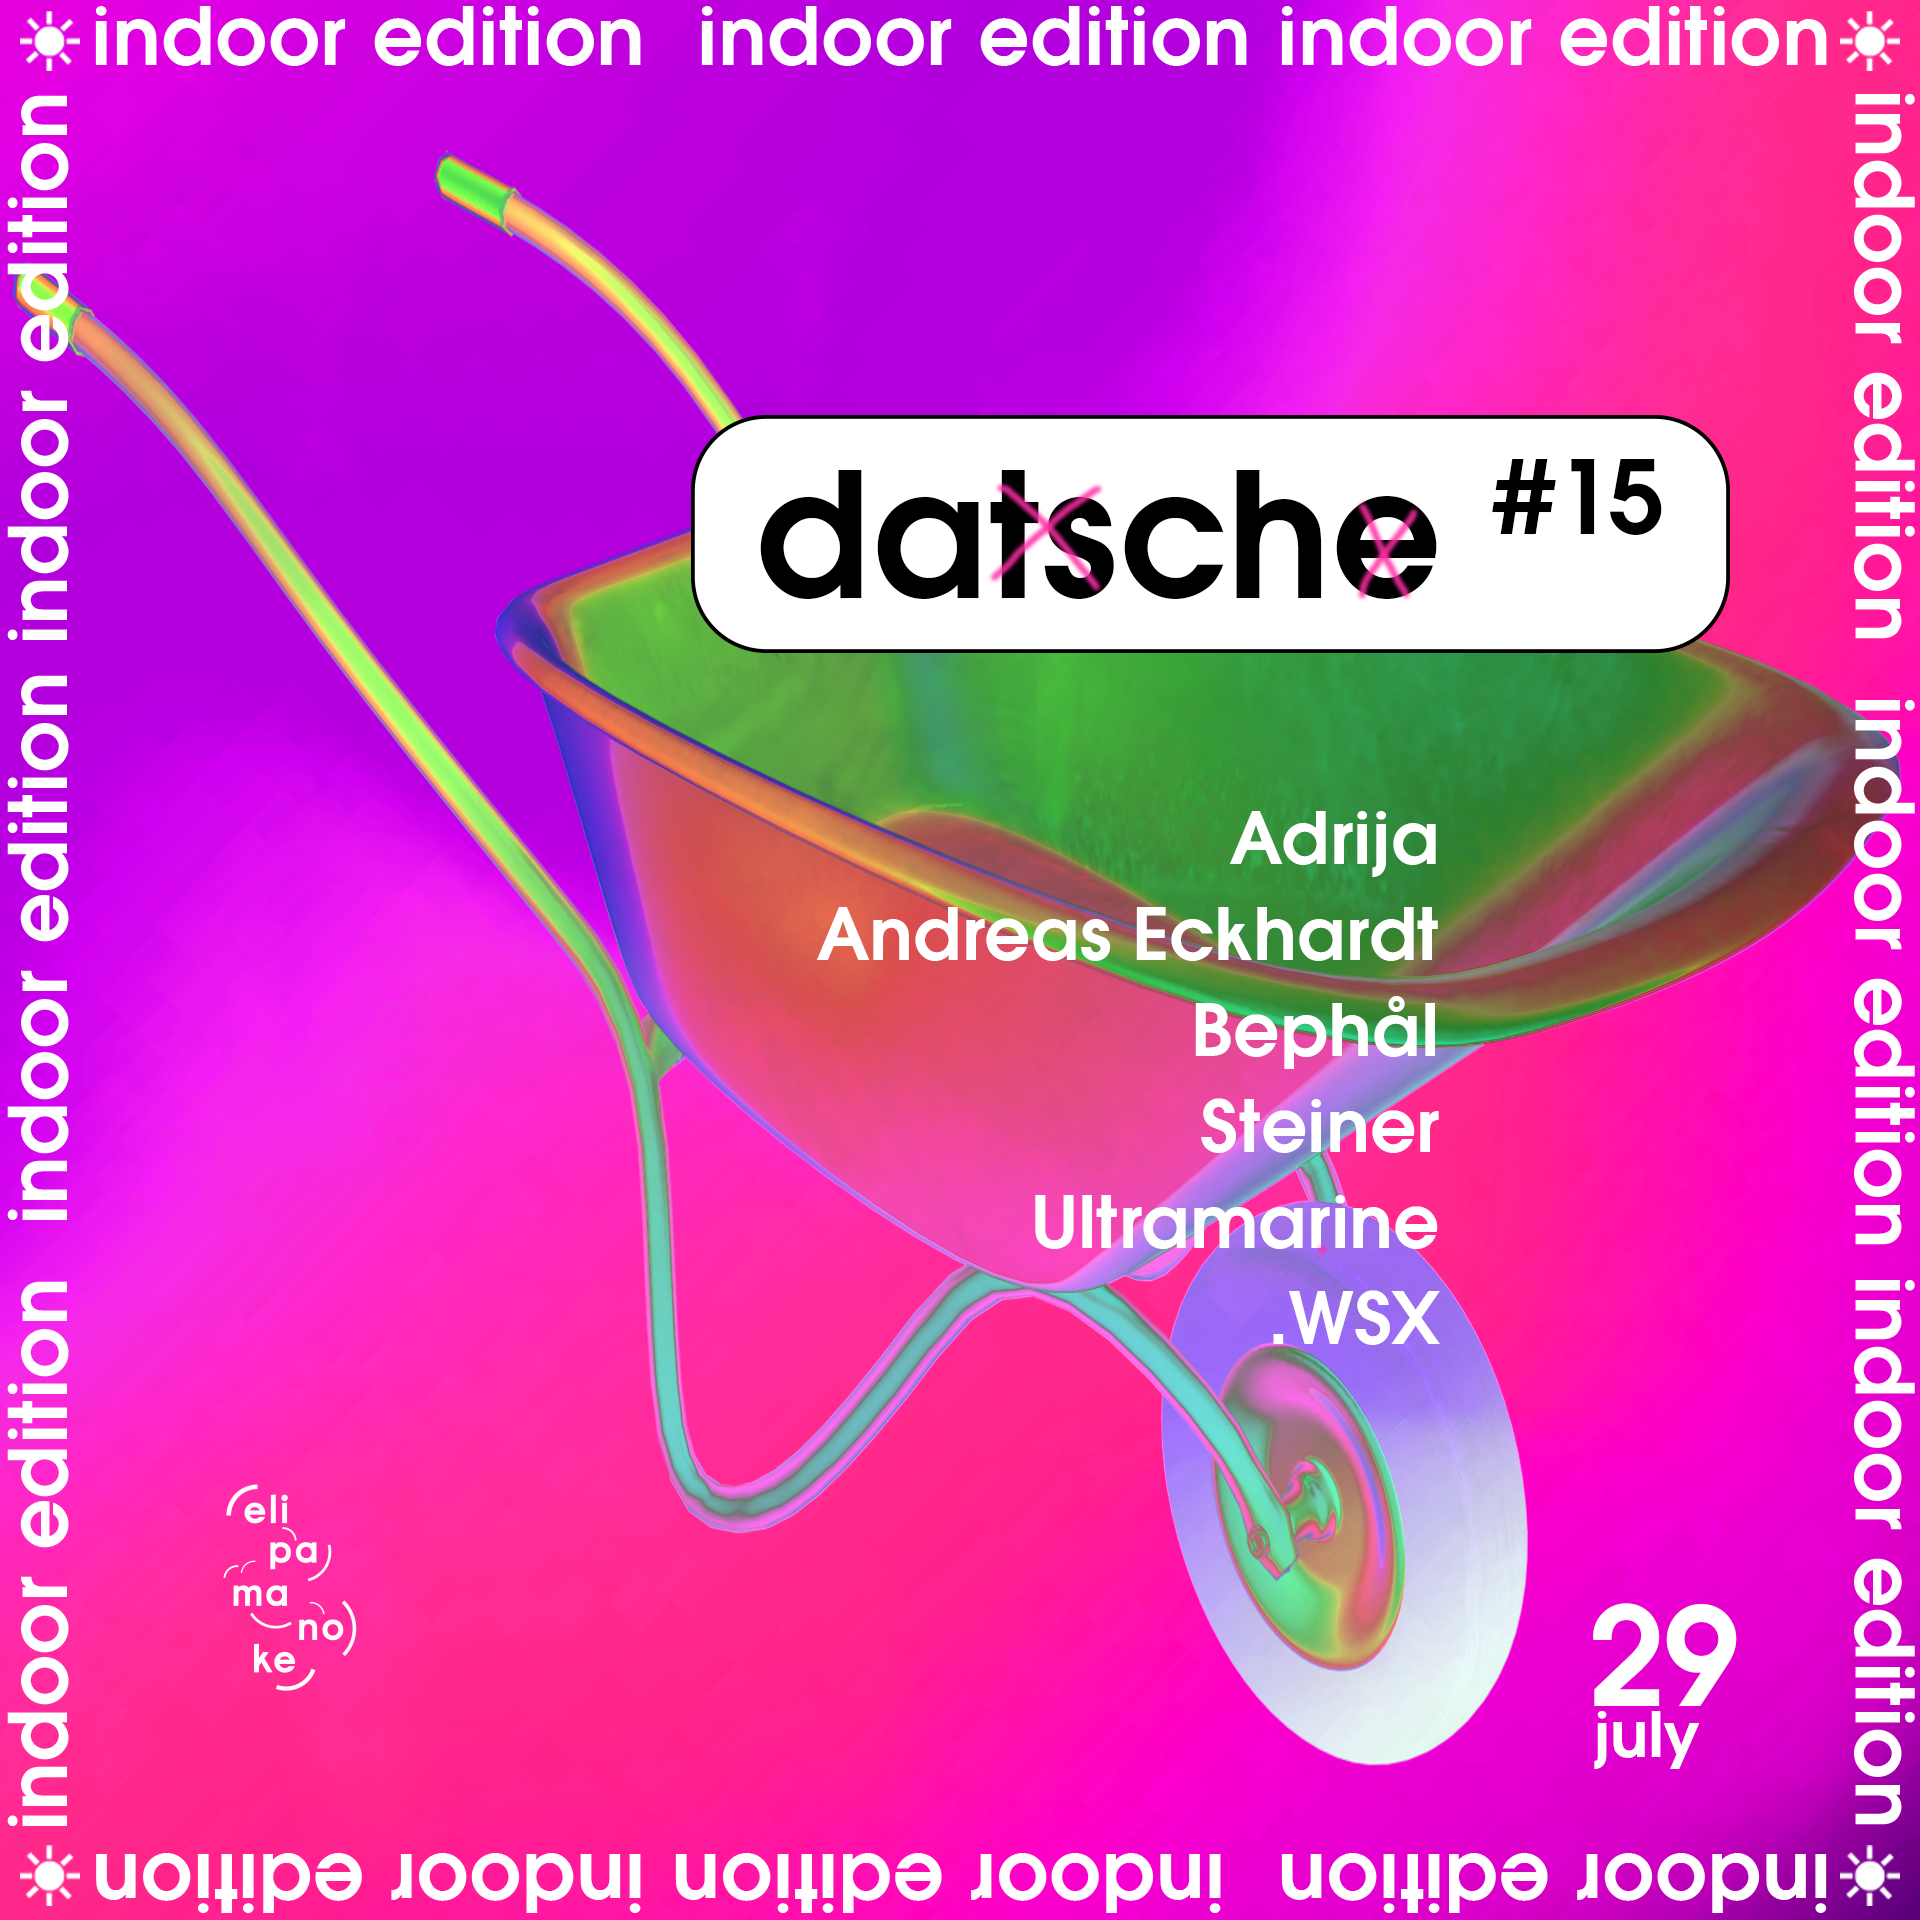 Datsche #15 / indoor edition - フライヤー表